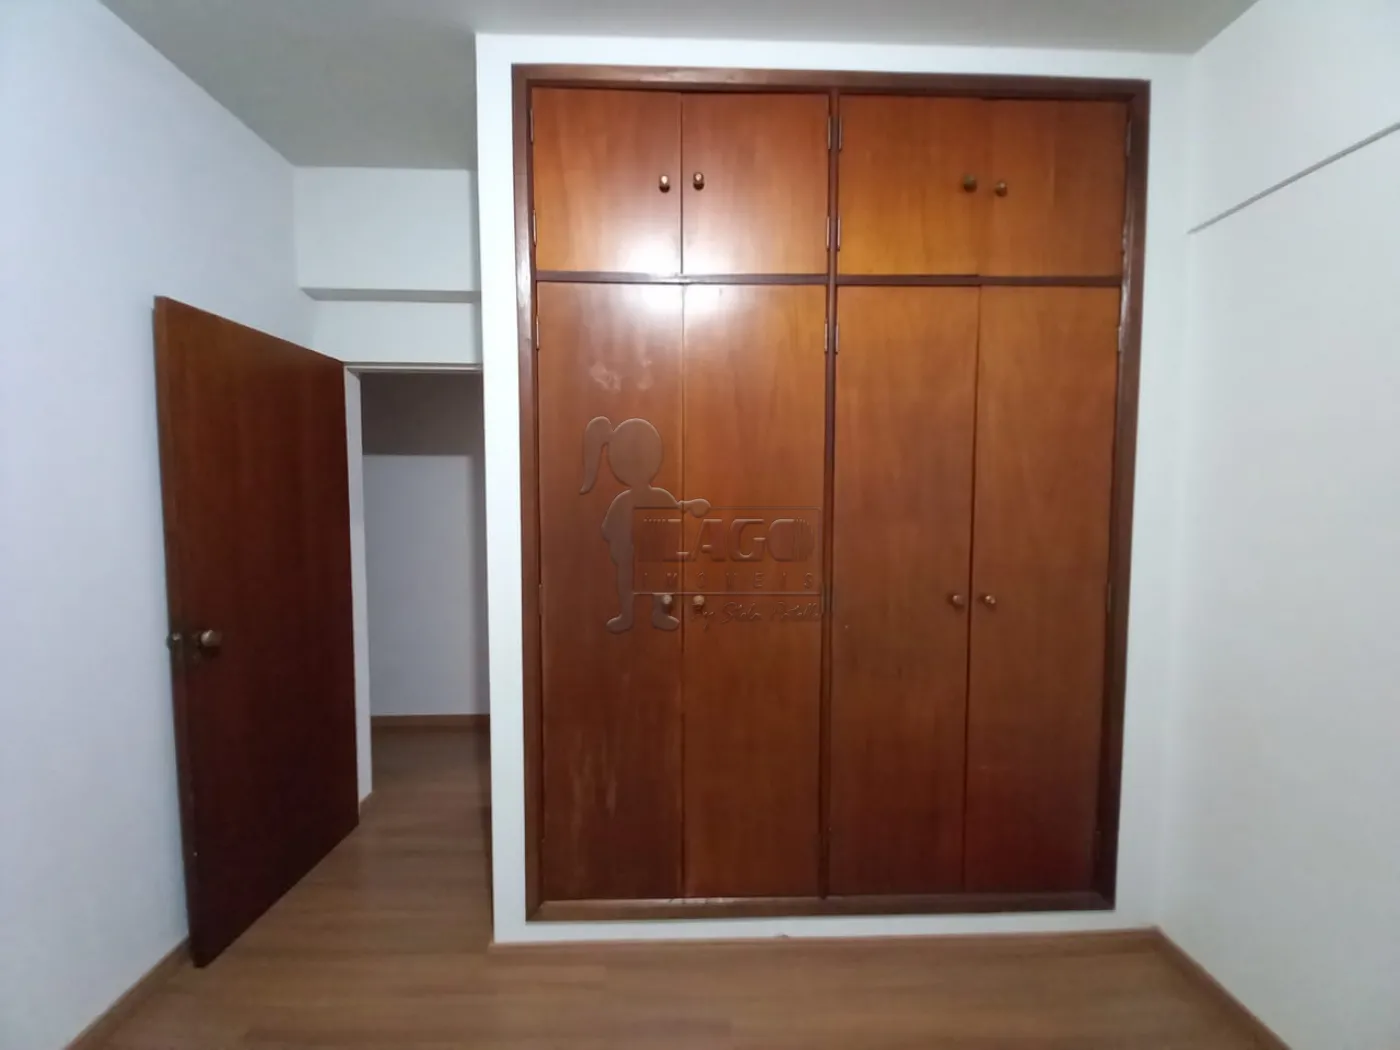 Alugar Apartamento / Padrão em Ribeirão Preto R$ 1.400,00 - Foto 10